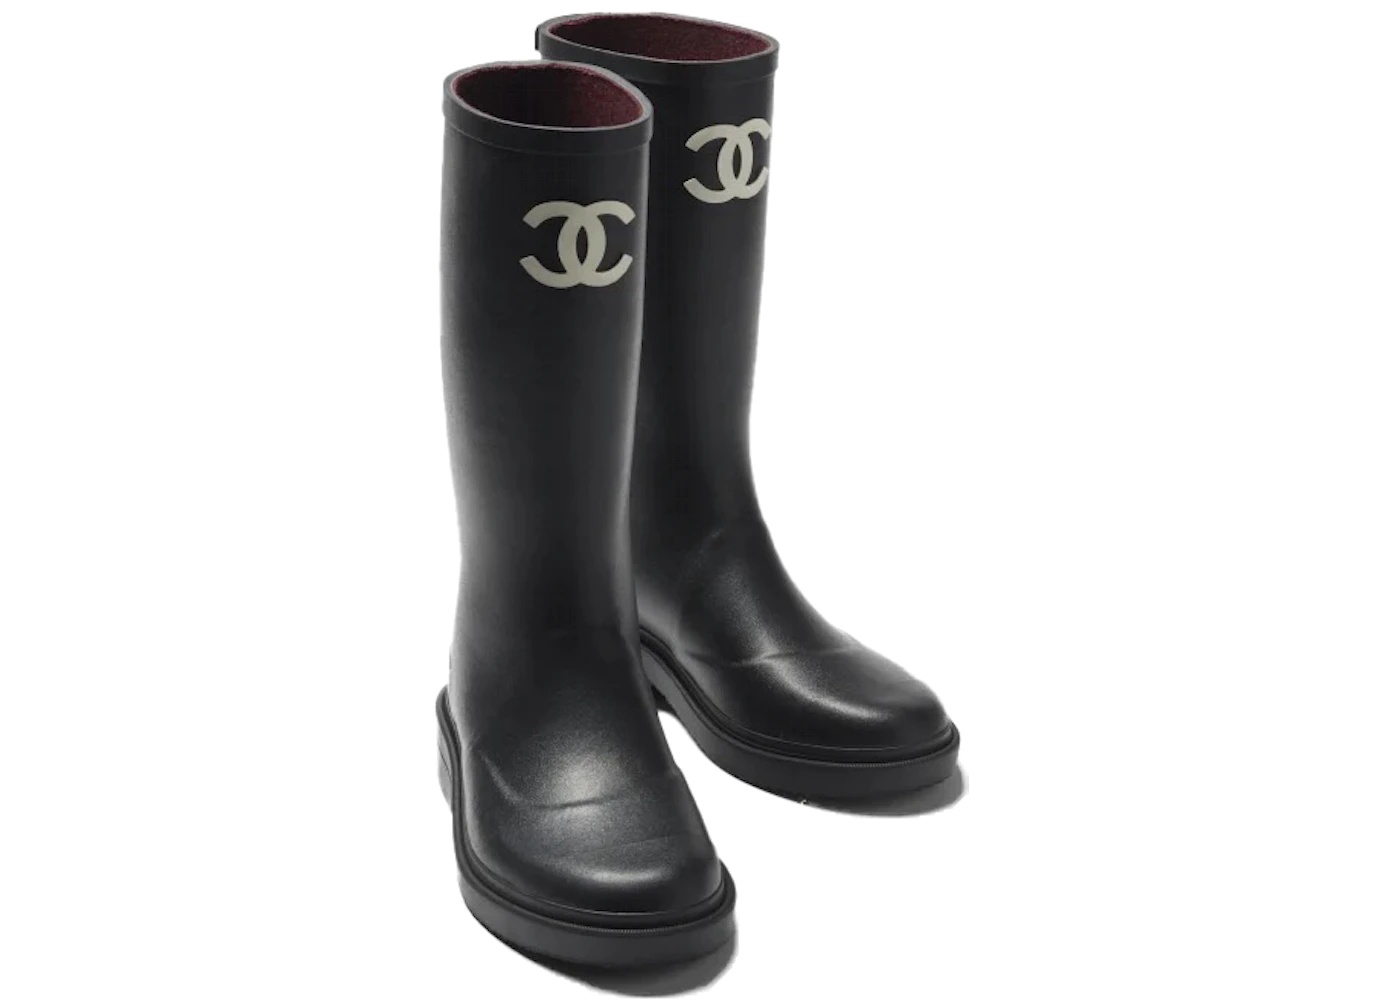 Chanel Rubber Rain Boots Black - 2